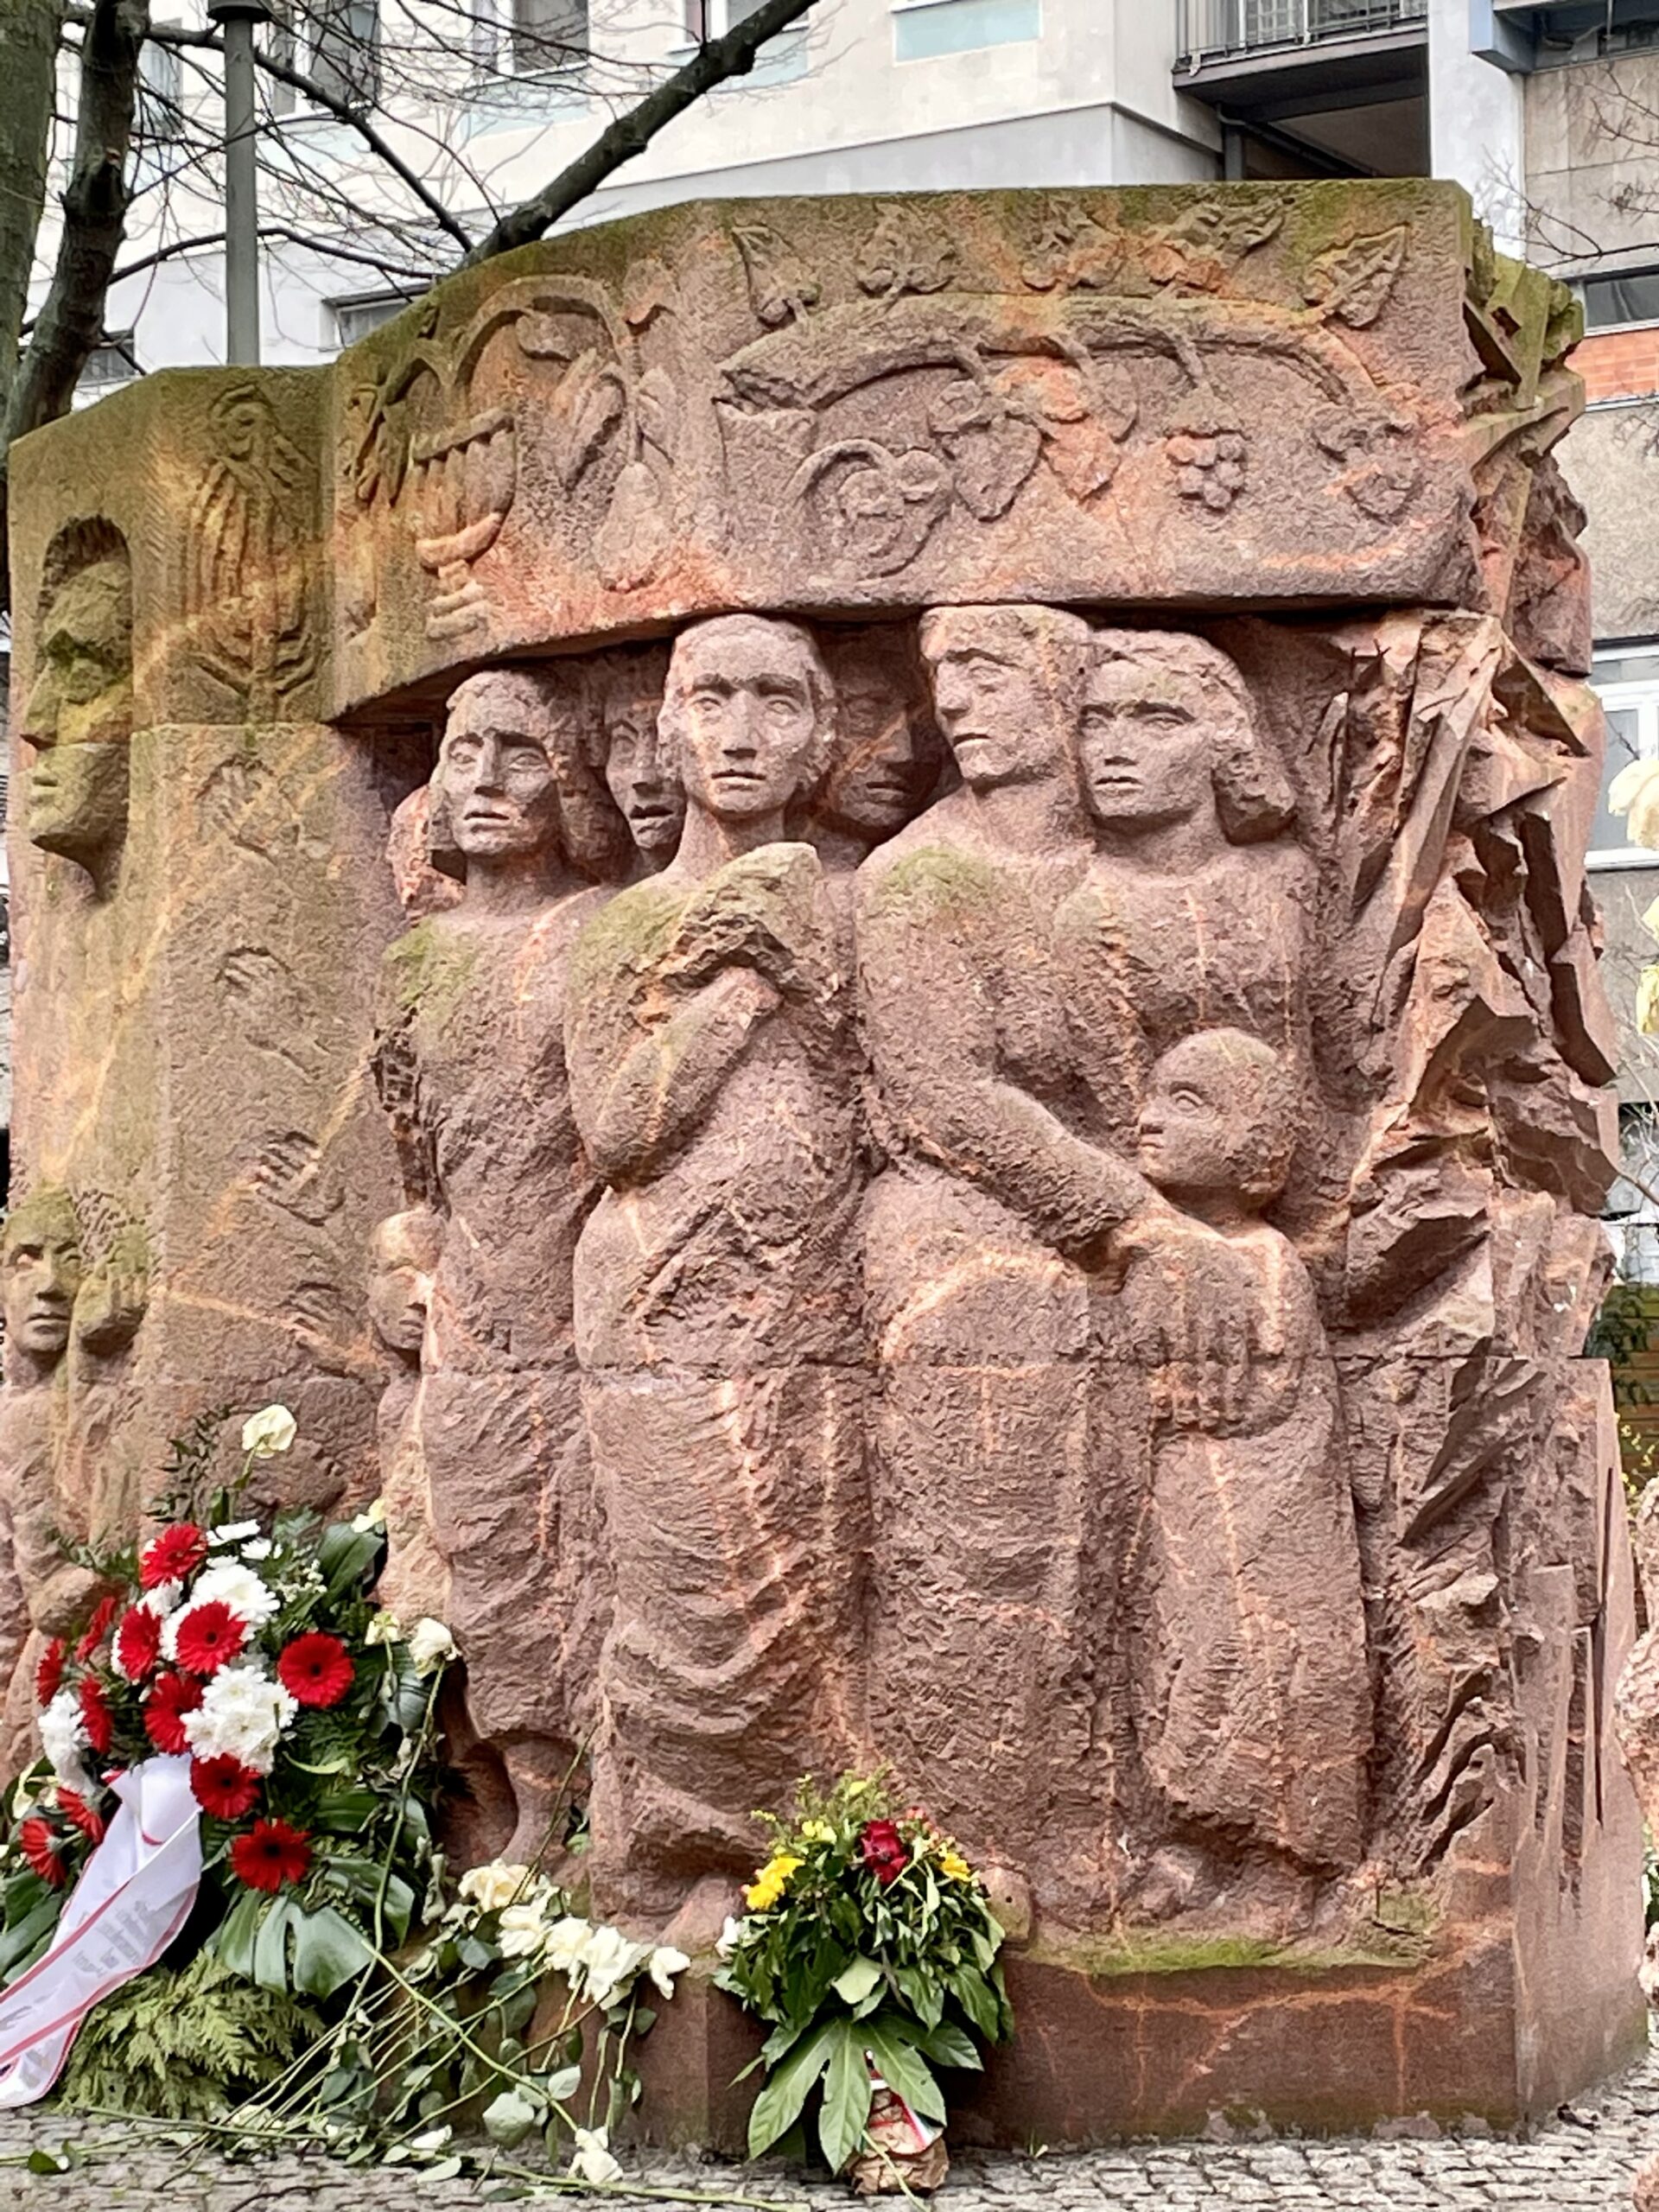 Eine rotfarbene Steinskulptur mit Gesichtern und Menschen drauf. Davor liegen rote, weiße und gelbe Blumen und ein Blumenkranz.